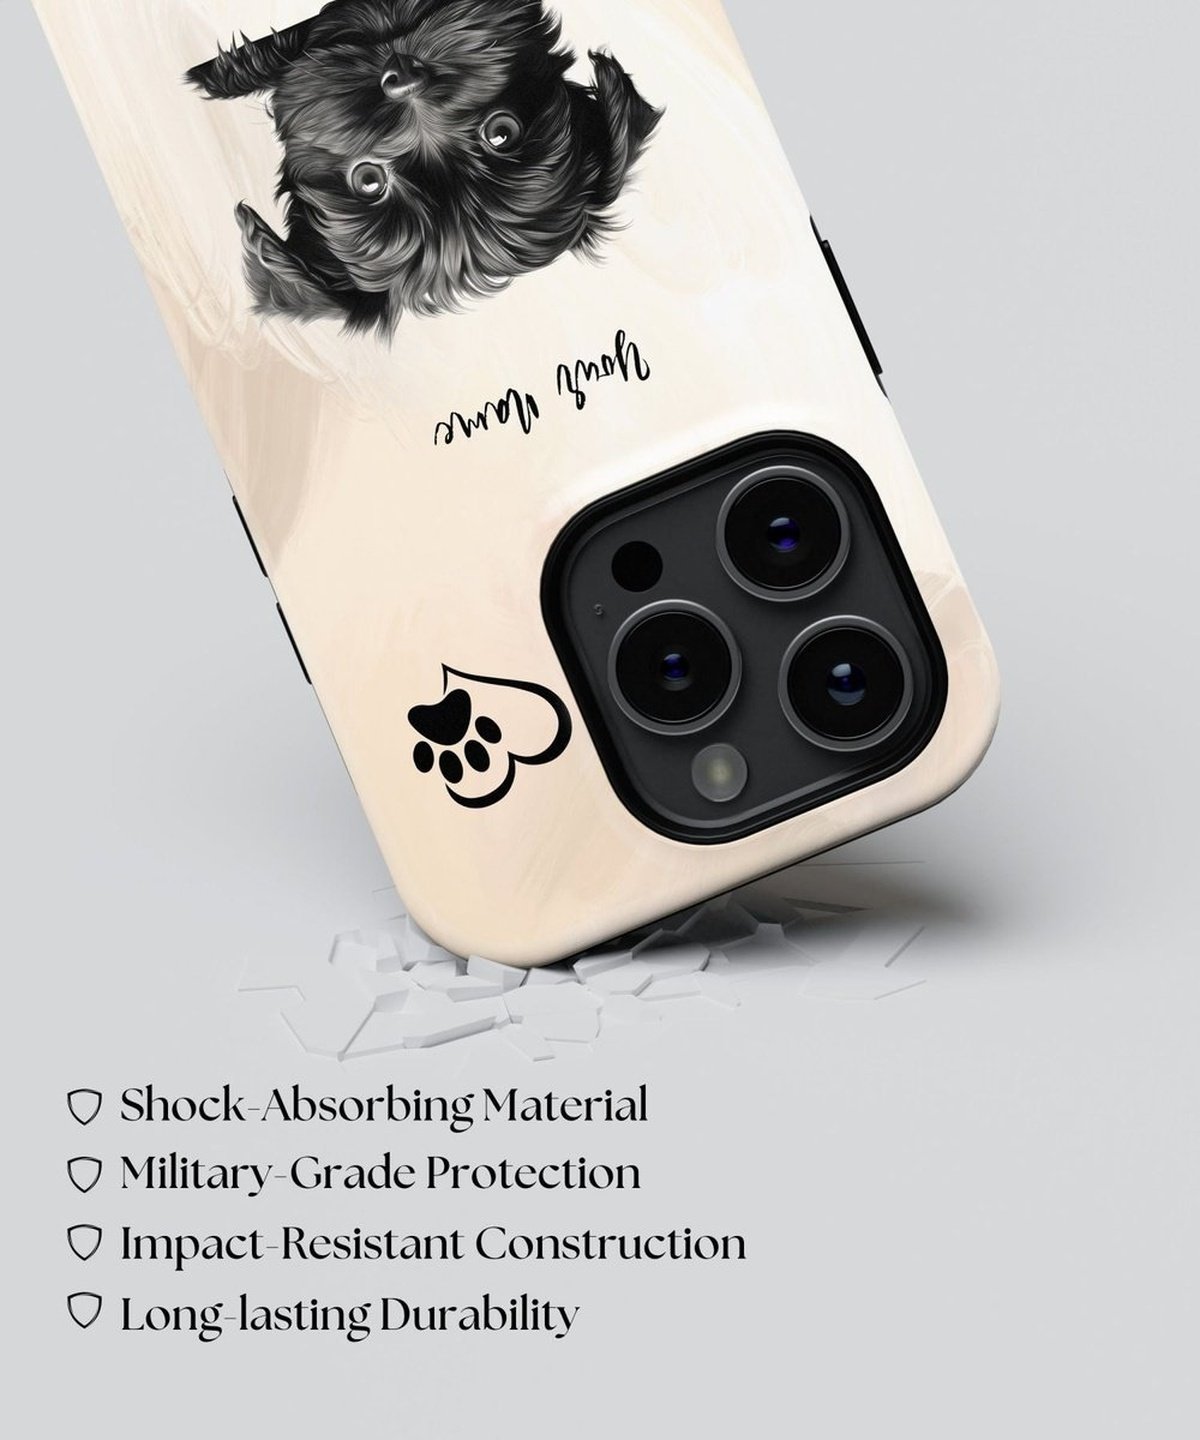 Affenpinscher Dog Phone - iPhone